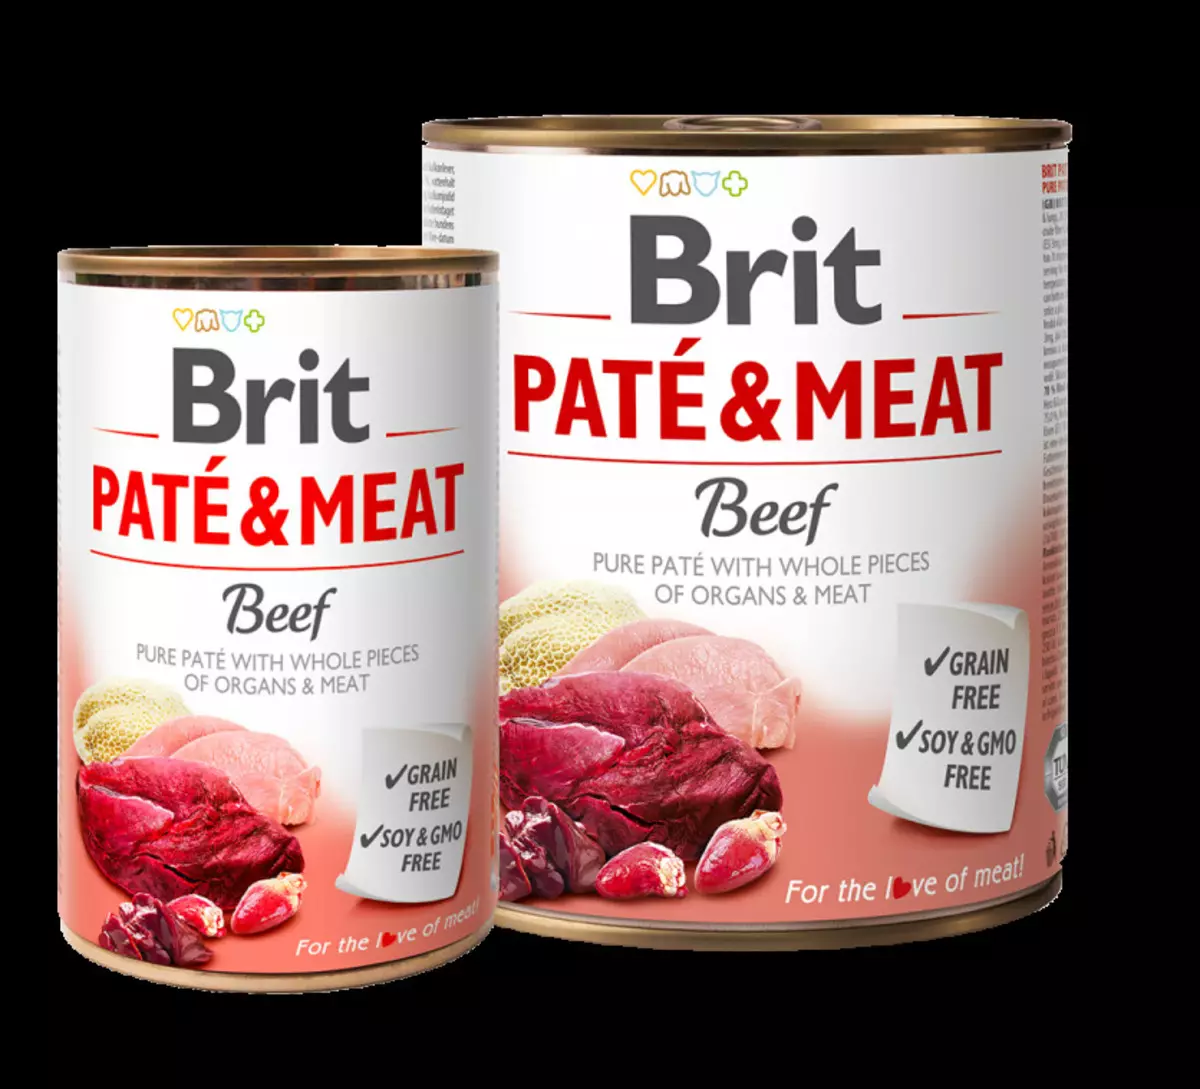 Κονσερβοποιημένα τρόφιμα Brit: υγρό φαγητό 850 g και άλλος όγκος για ενήλικες σκυλιά, σχόλια 21634_13